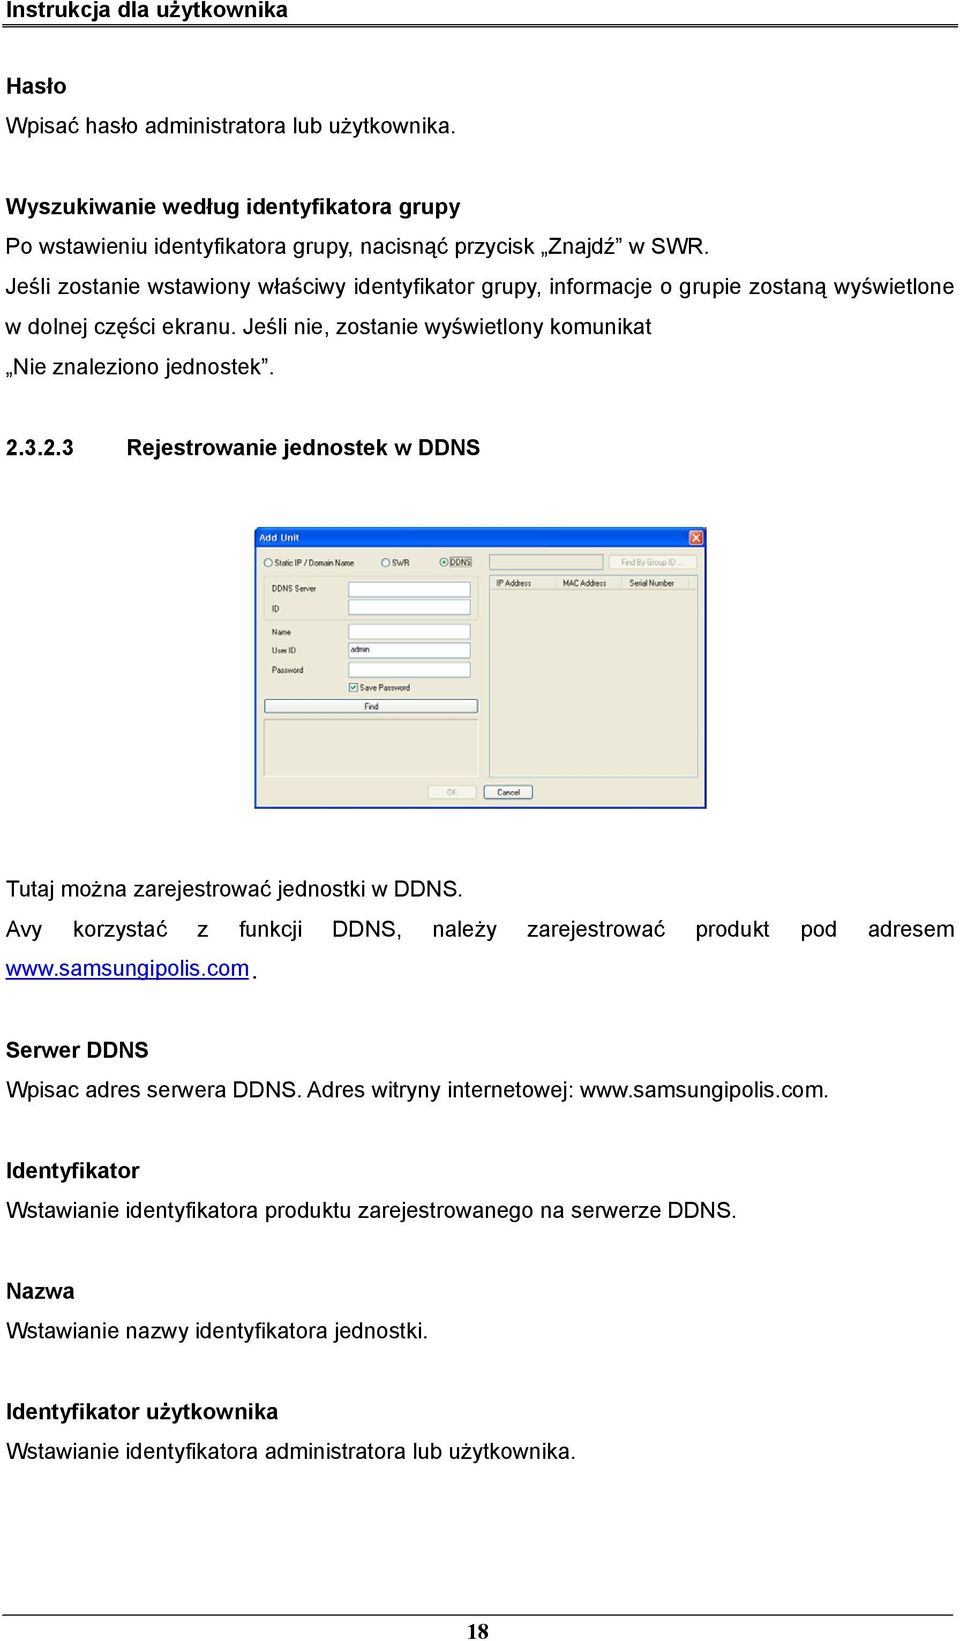 3.2.3 Rejestrowanie jednostek w DDNS Tutaj można zarejestrować jednostki w DDNS. Avy korzystać z funkcji DDNS, należy zarejestrować produkt pod adresem www.samsungipolis.com.